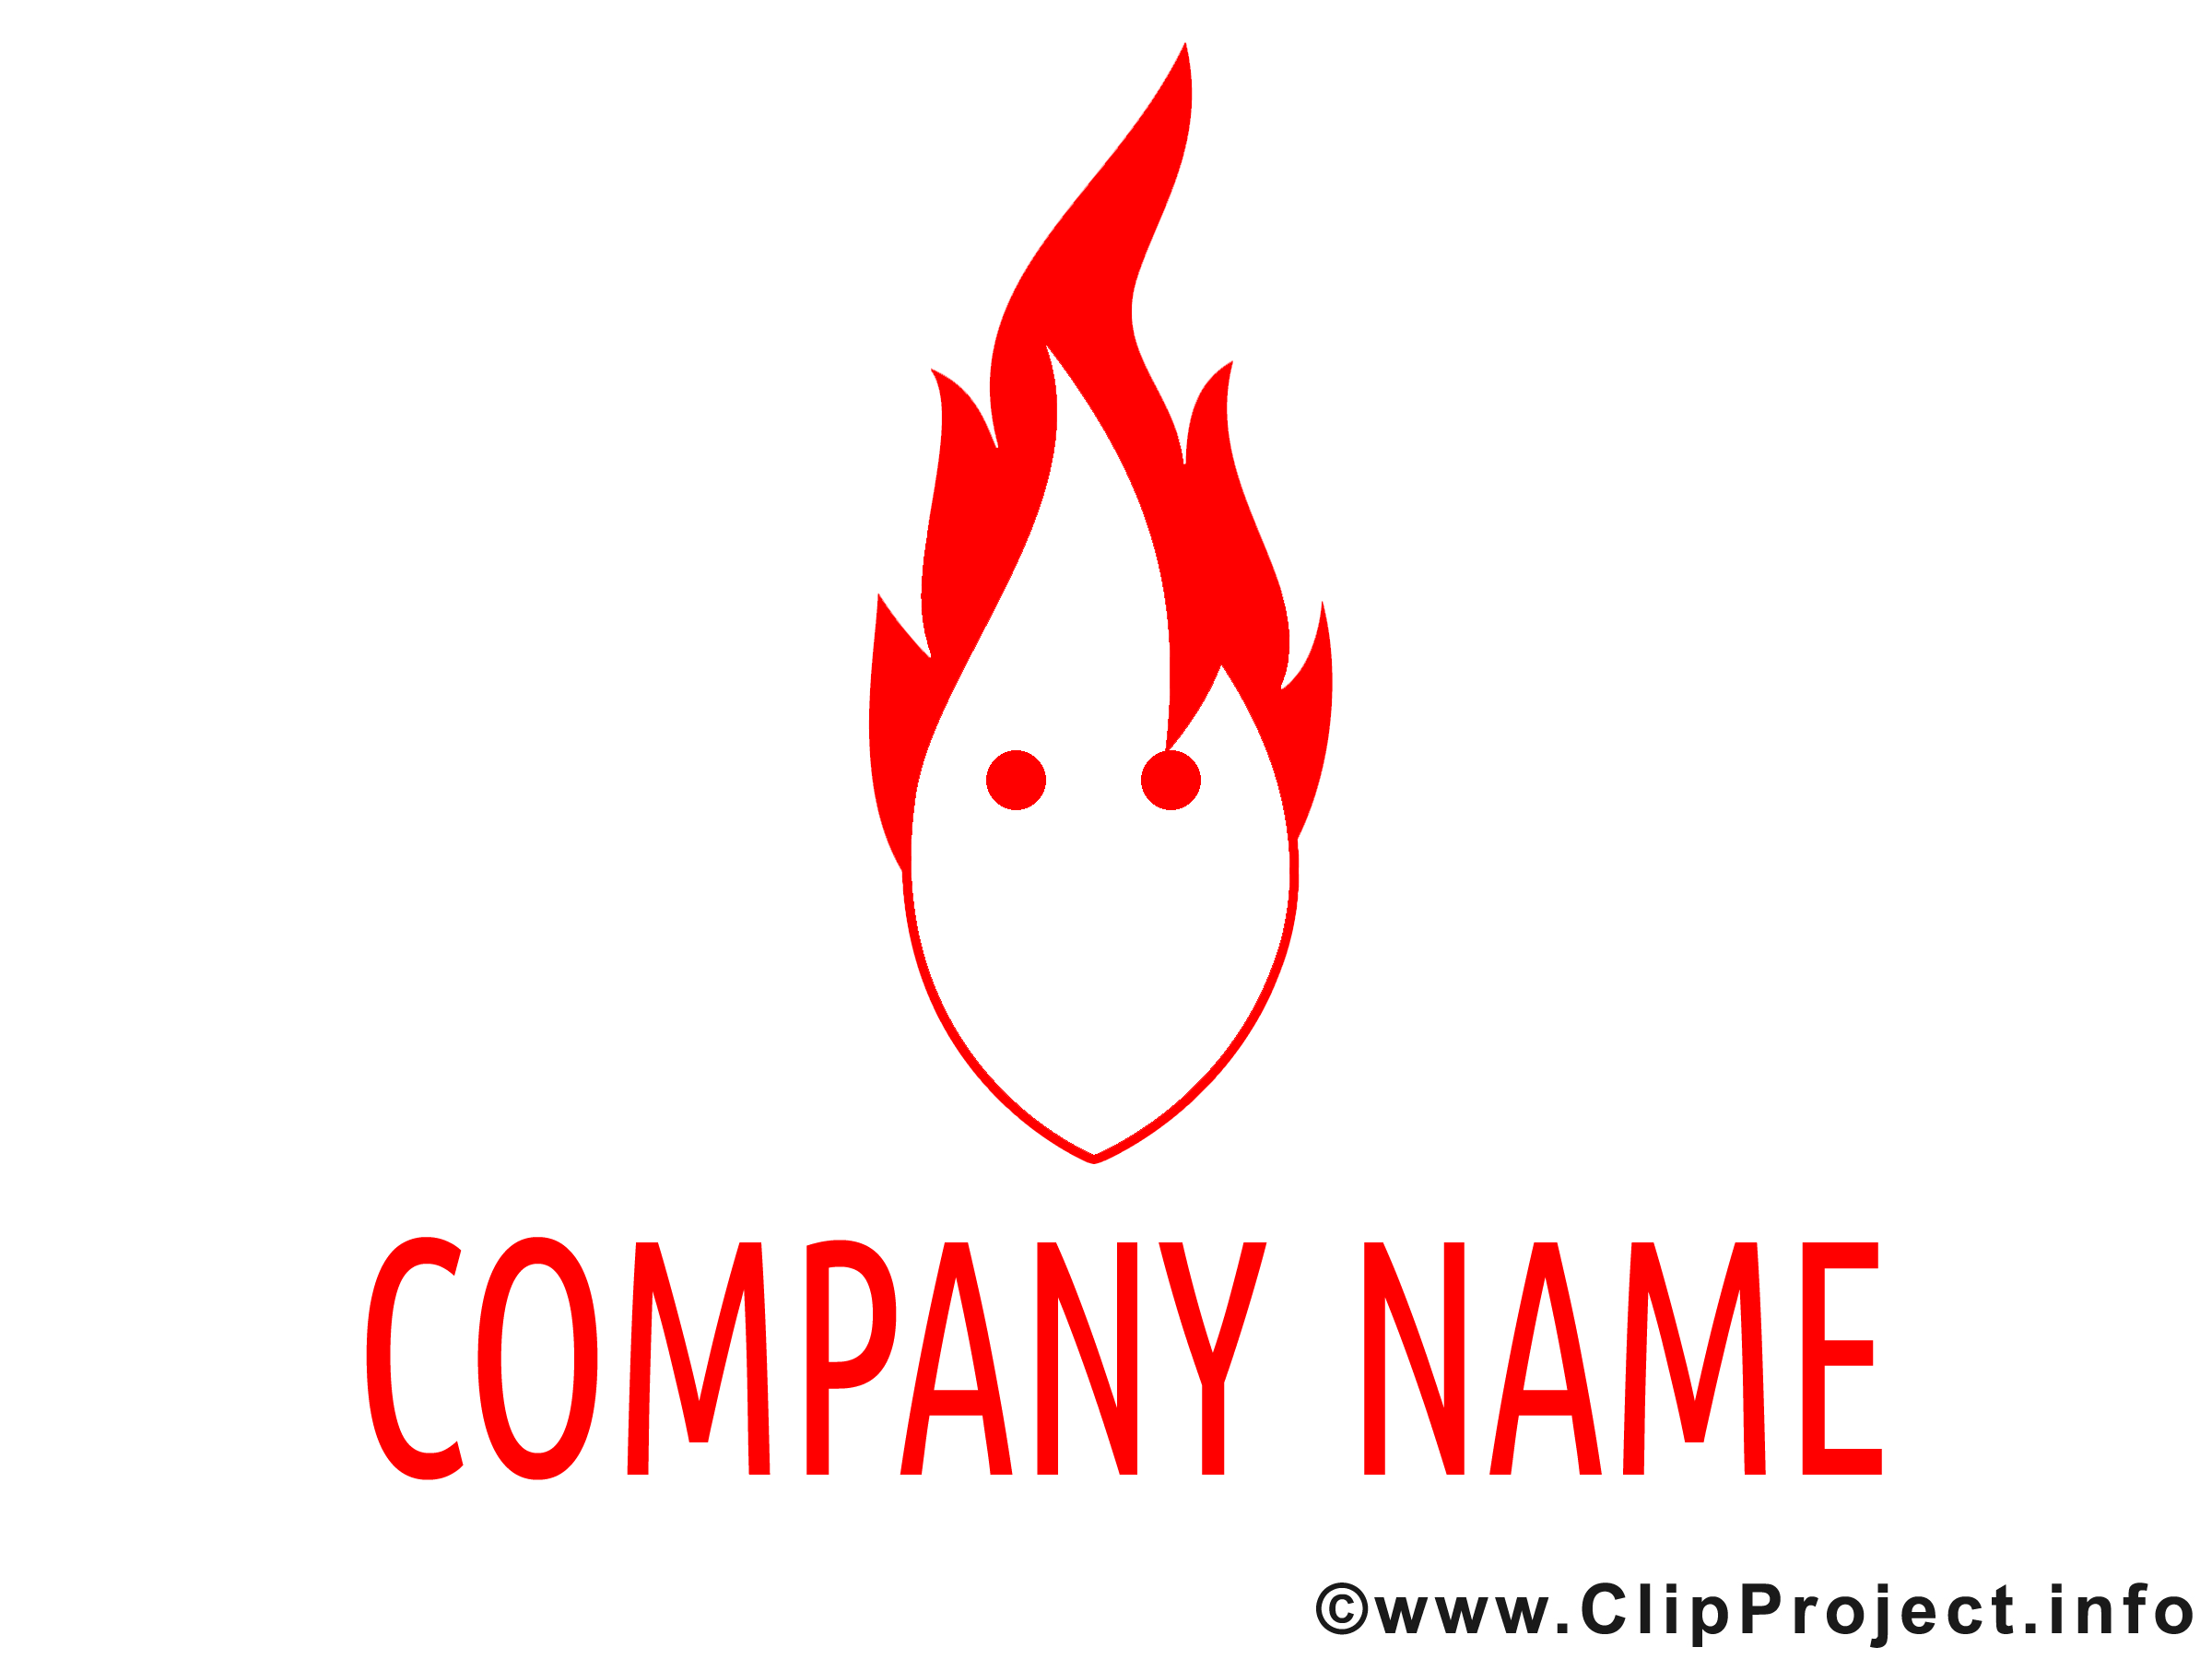 Flamme logo image à télécharger gratuite